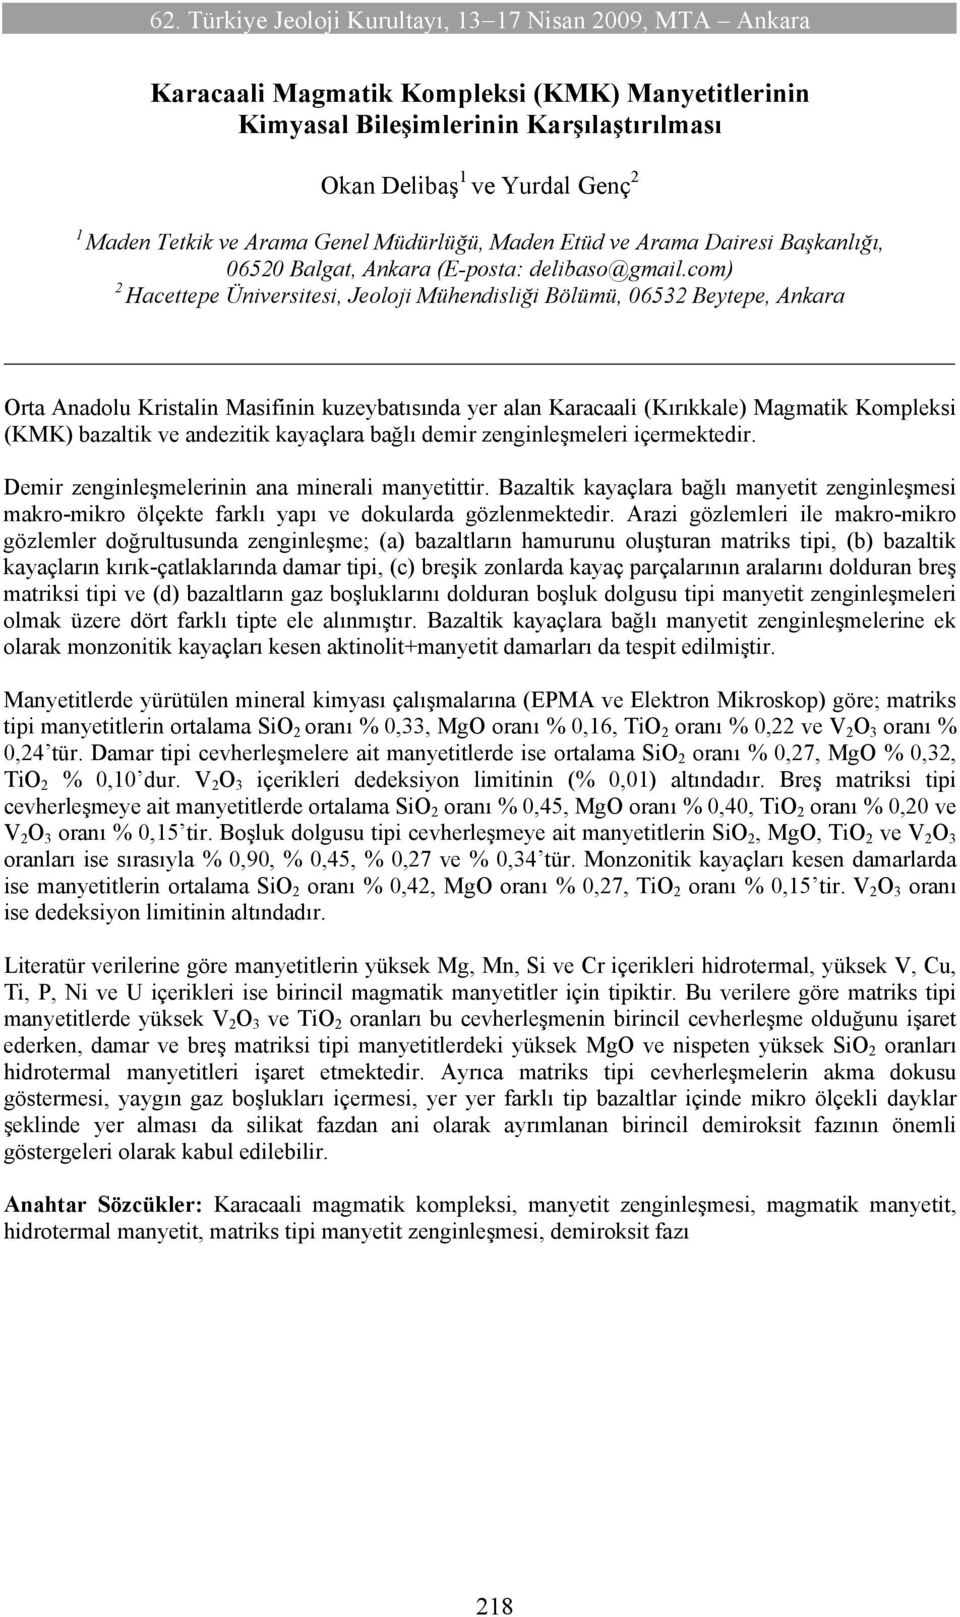 com) 2 Hacettepe Üniversitesi, Jeoloji Mühendisliği Bölümü, 06532 Beytepe, Ankara Orta Anadolu Kristalin Masifinin kuzeybatısında yer alan Karacaali (Kırıkkale) Magmatik Kompleksi (KMK) bazaltik ve